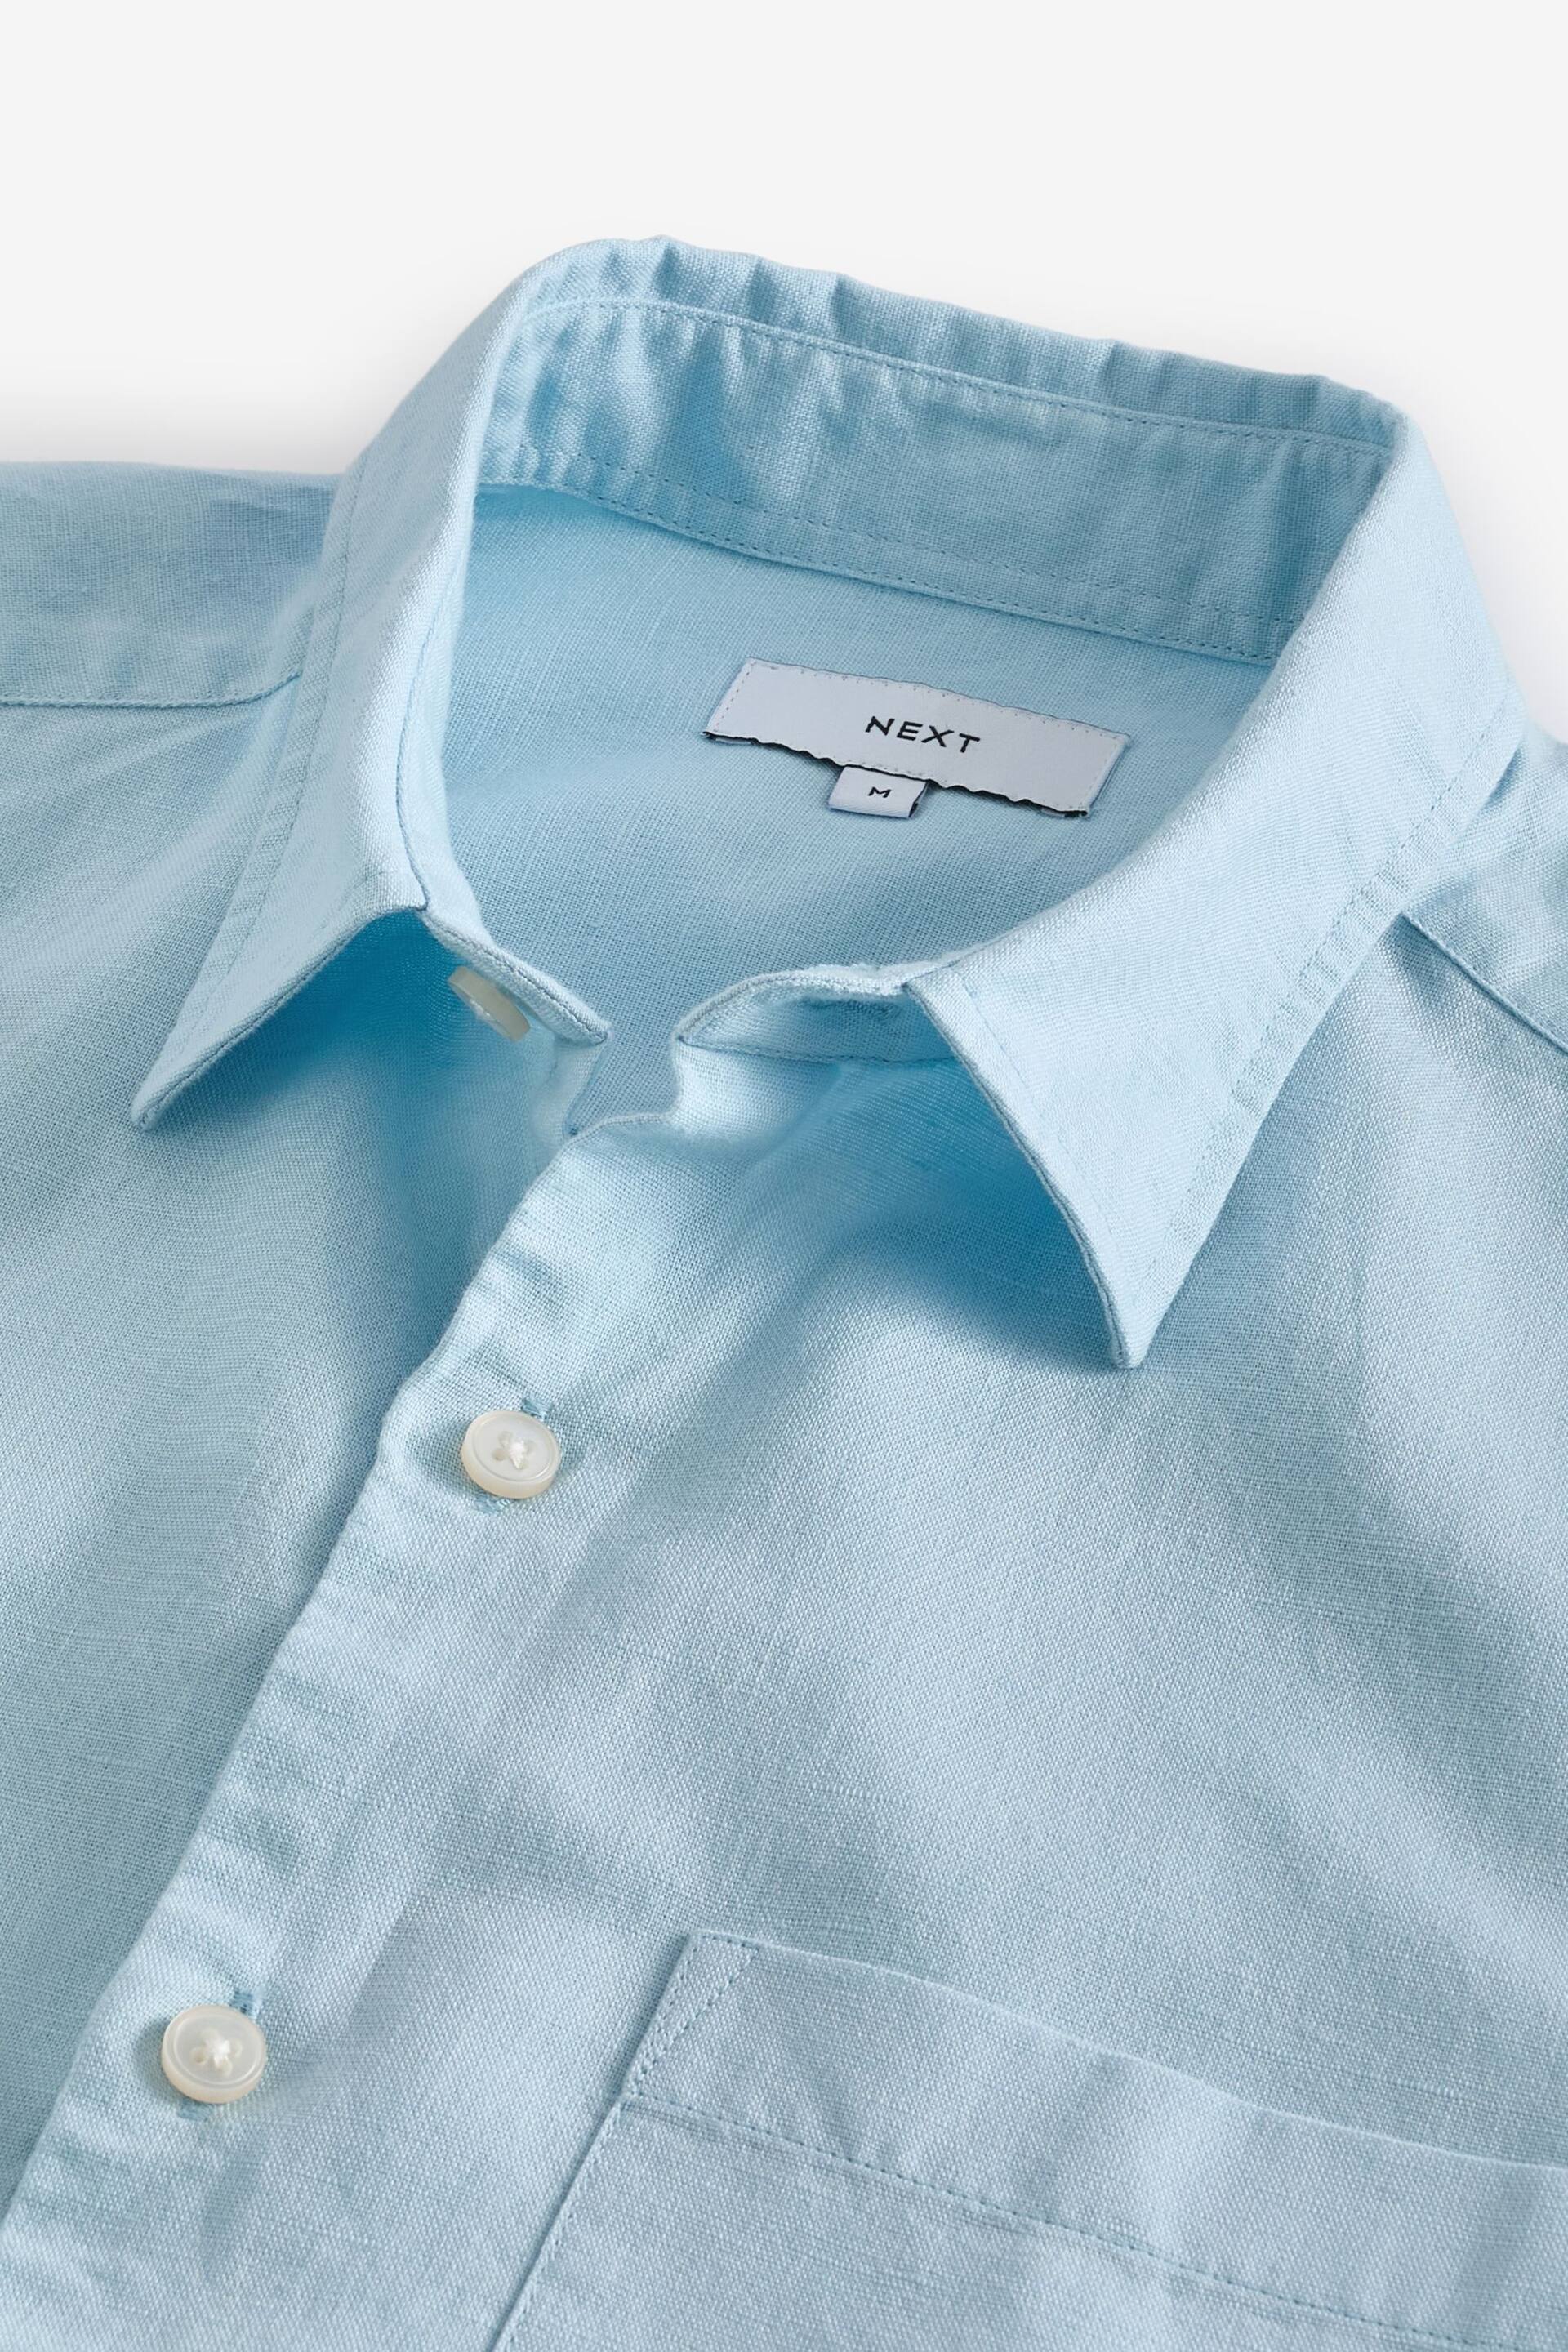 Light Blue Standard Collar Linen Blend Short Sleeve Shirt - Image 7 of 8